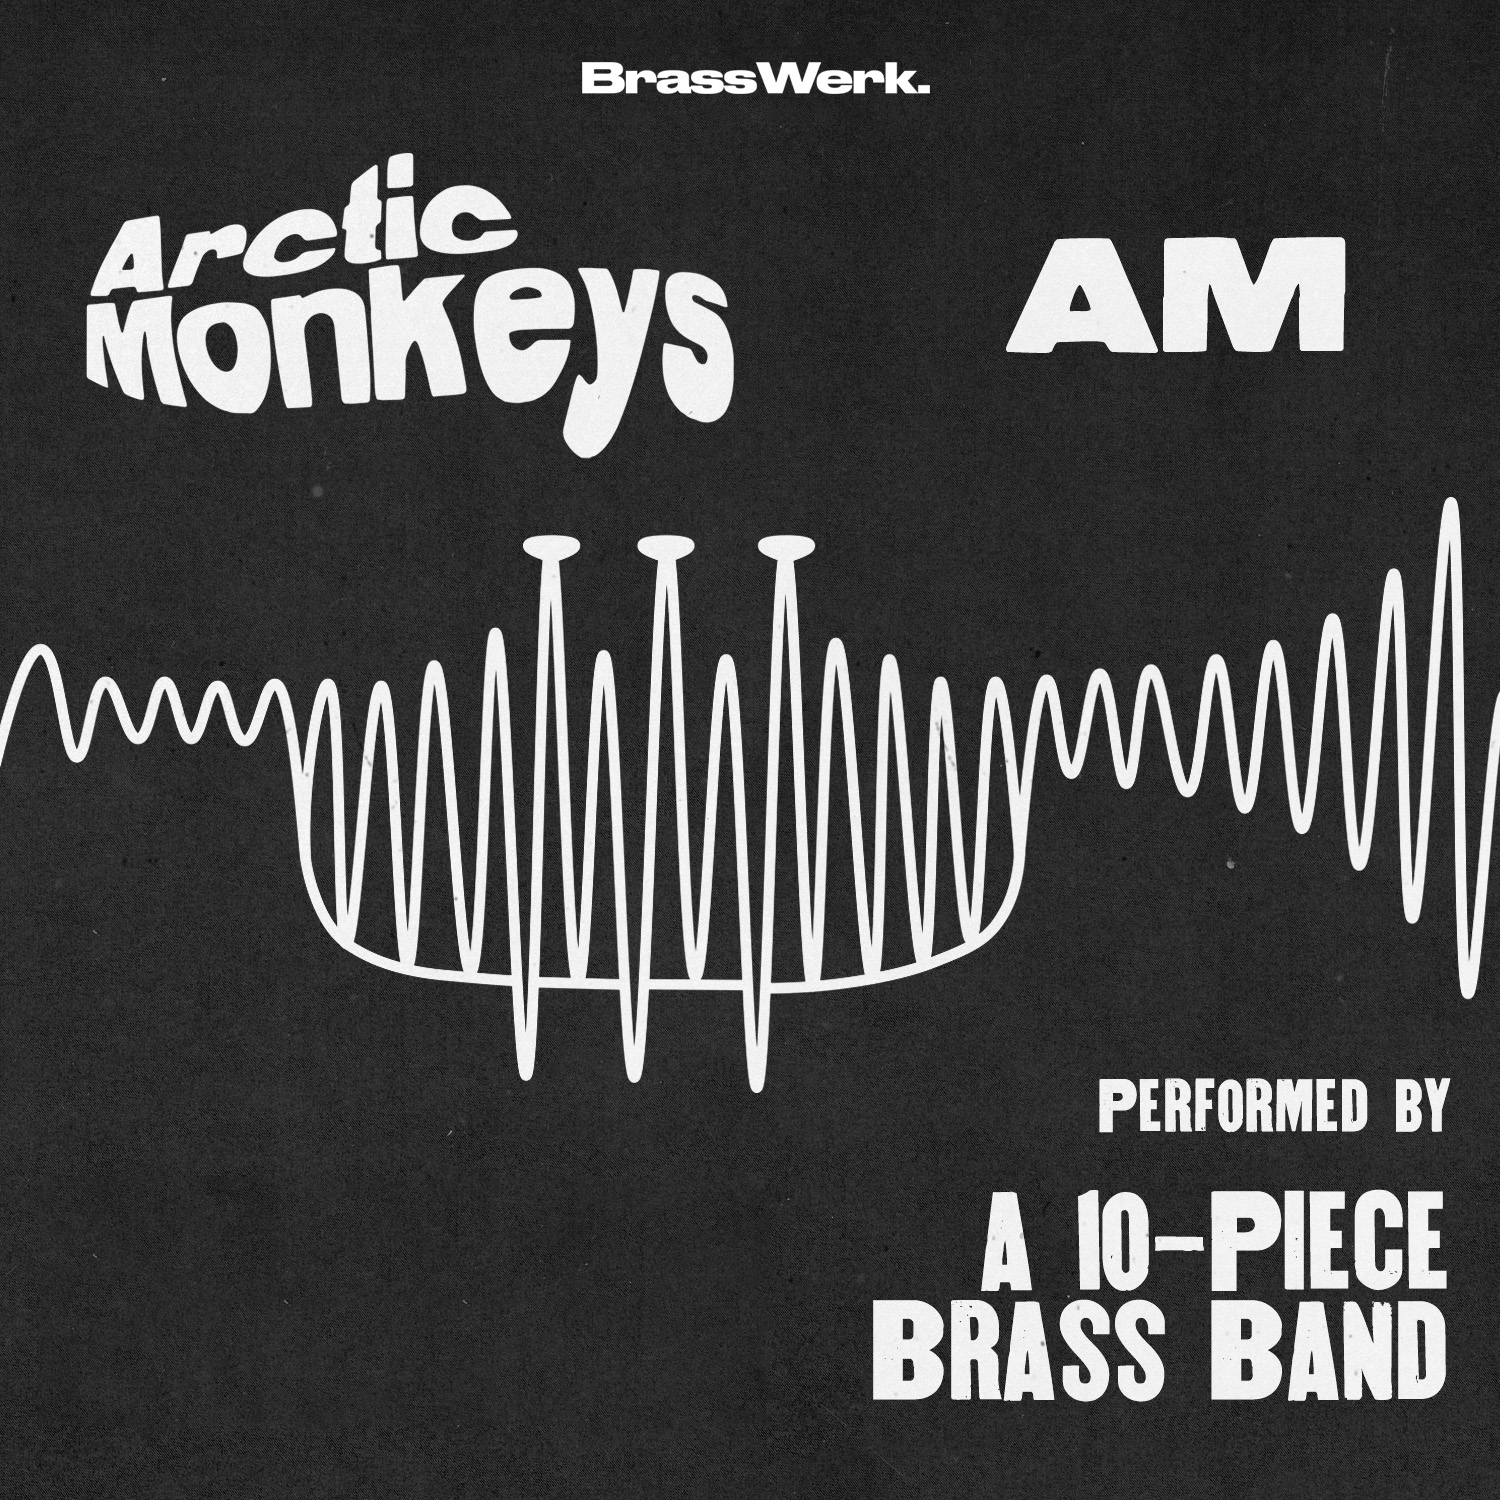 Arctic Monkeys , AM